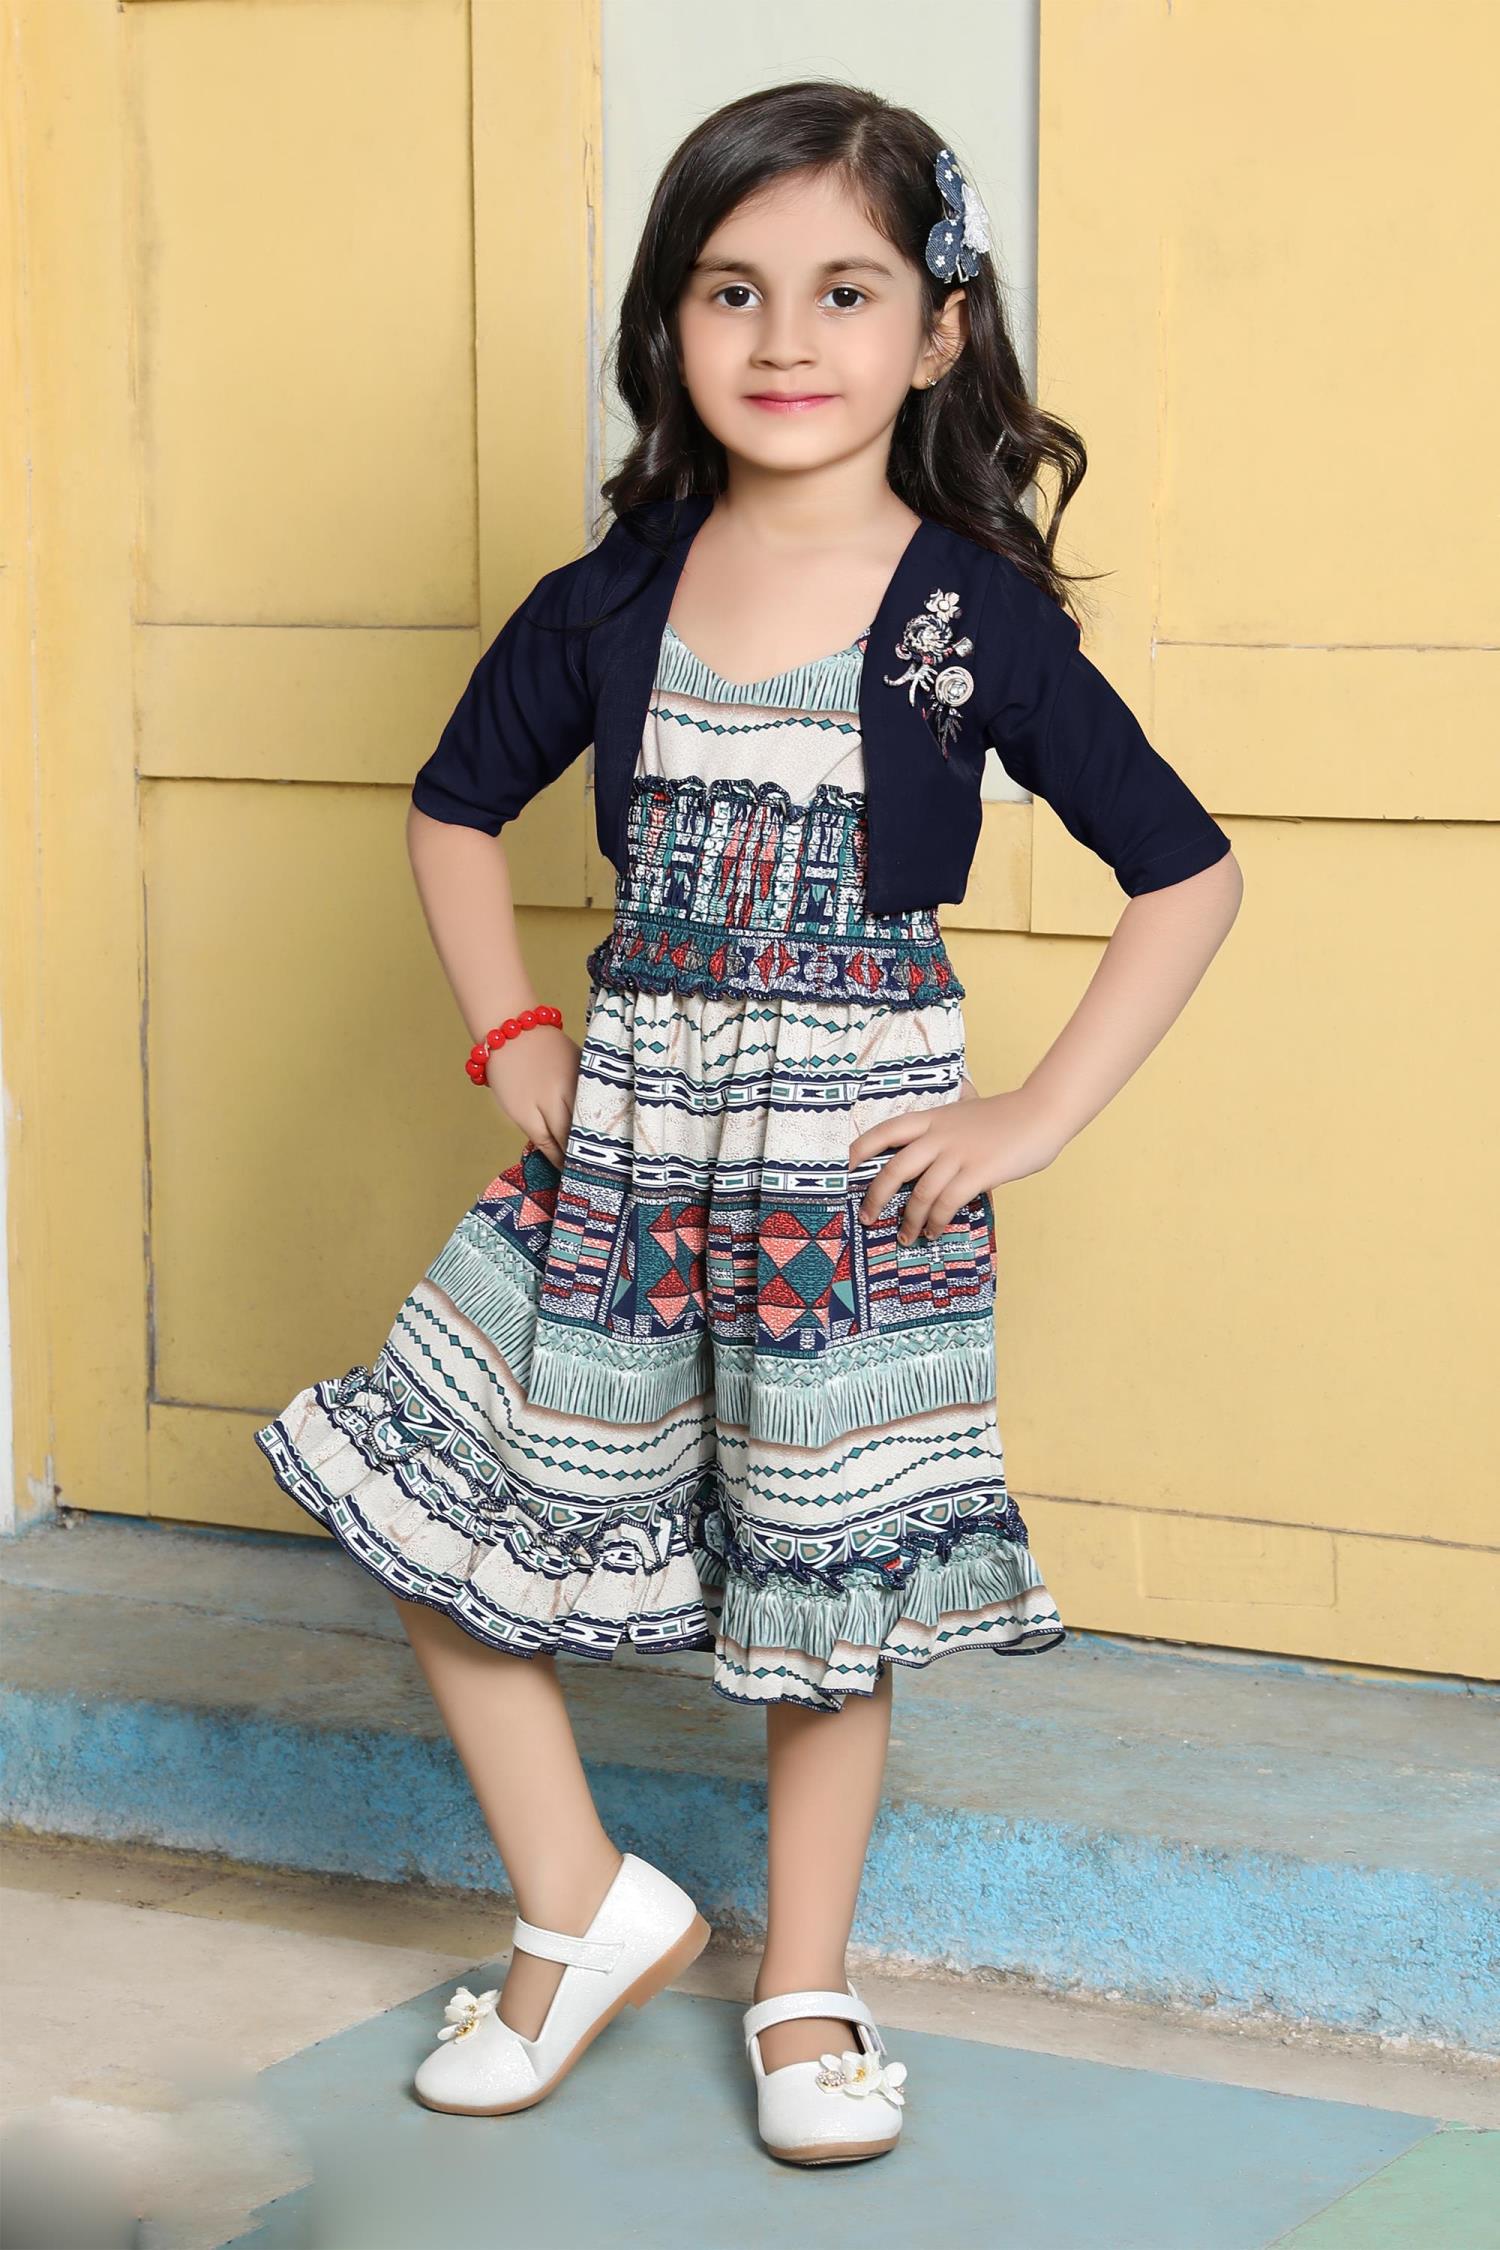 Buy Lavender Georgette Dress Girl Kids Online at Best Price | Cbazaar